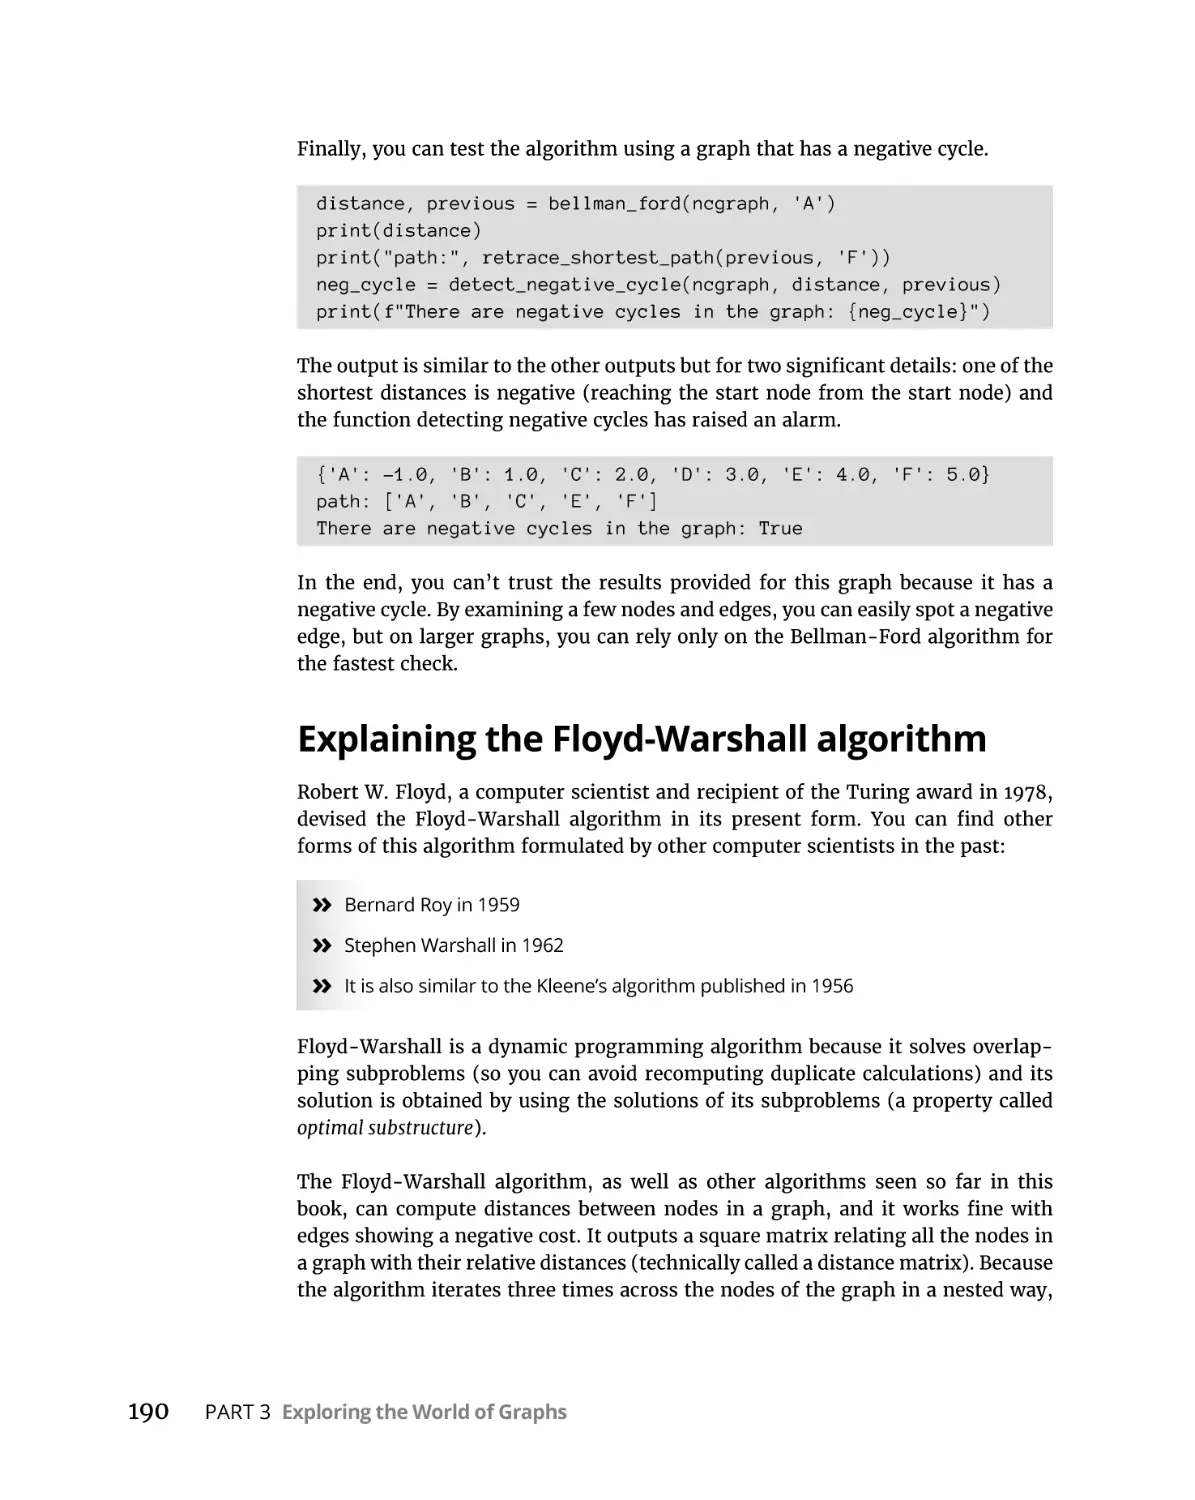 Explaining the Floyd-Warshall algorithm